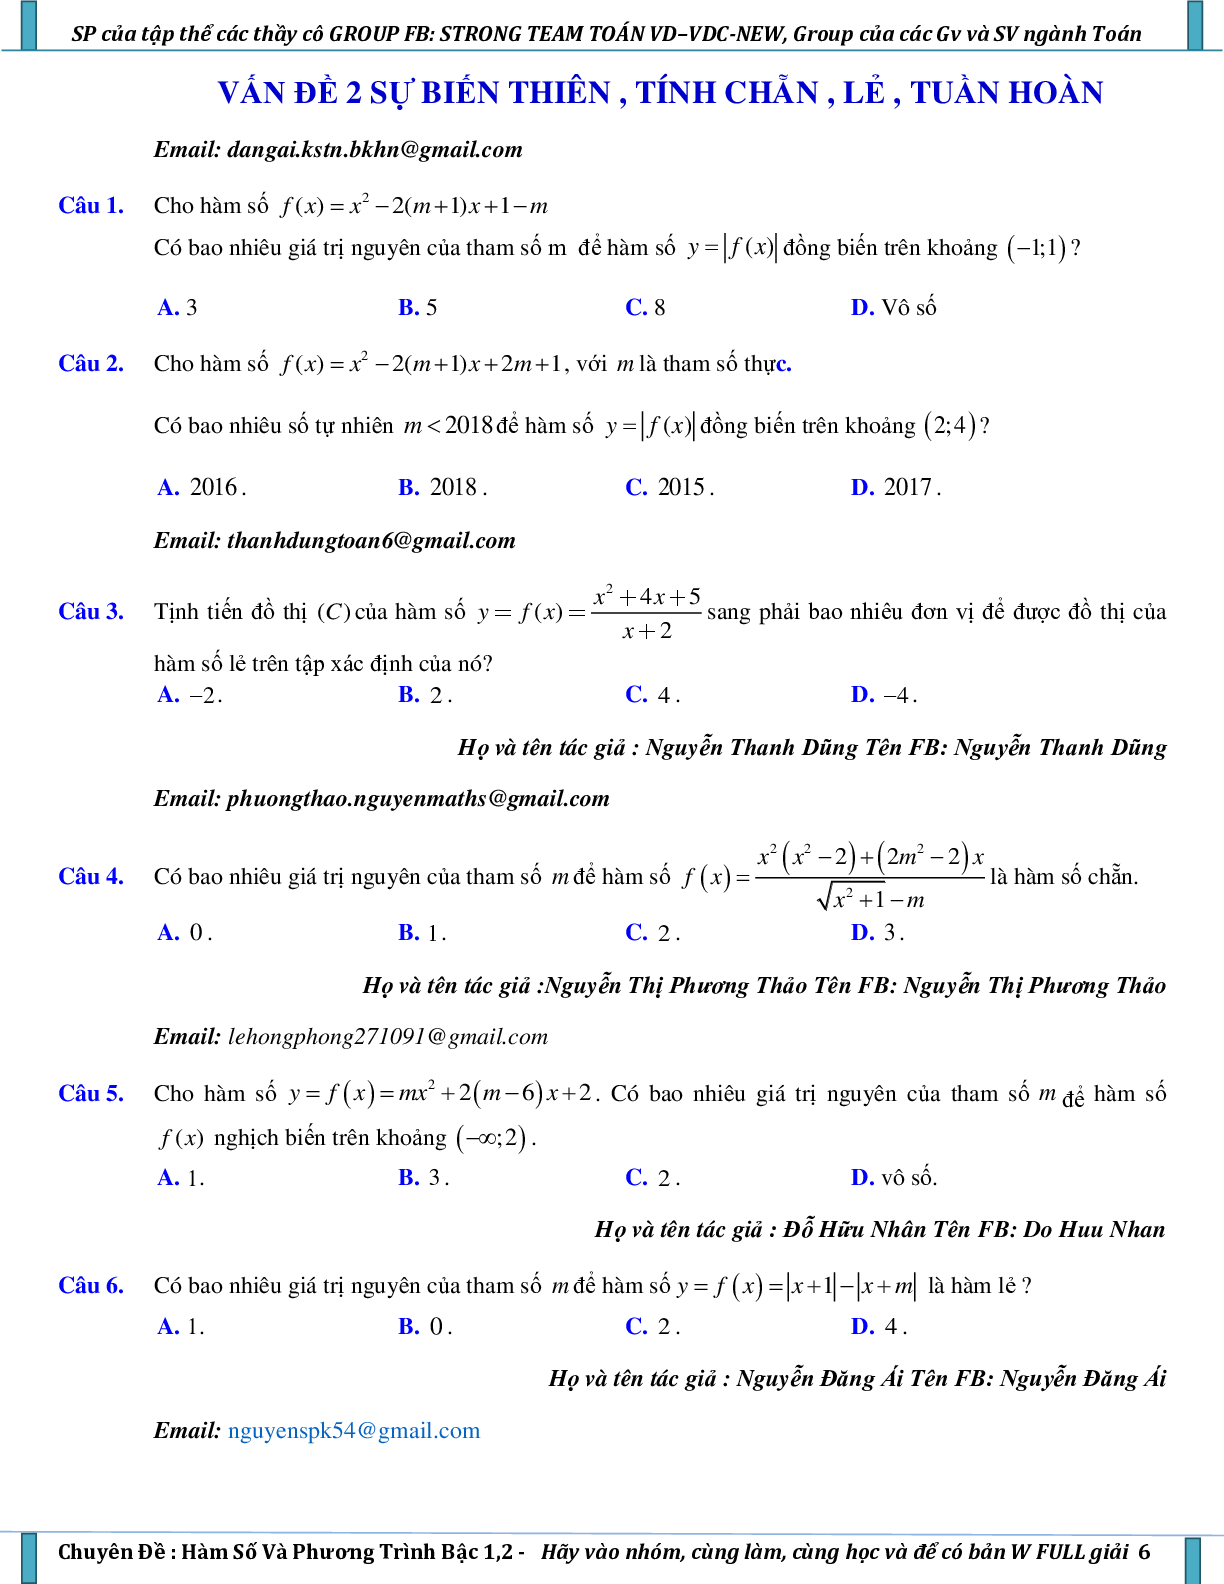 Vận dụng – vận dụng cao hàm số và phương trình bậc nhất, bậc hai (trang 6)